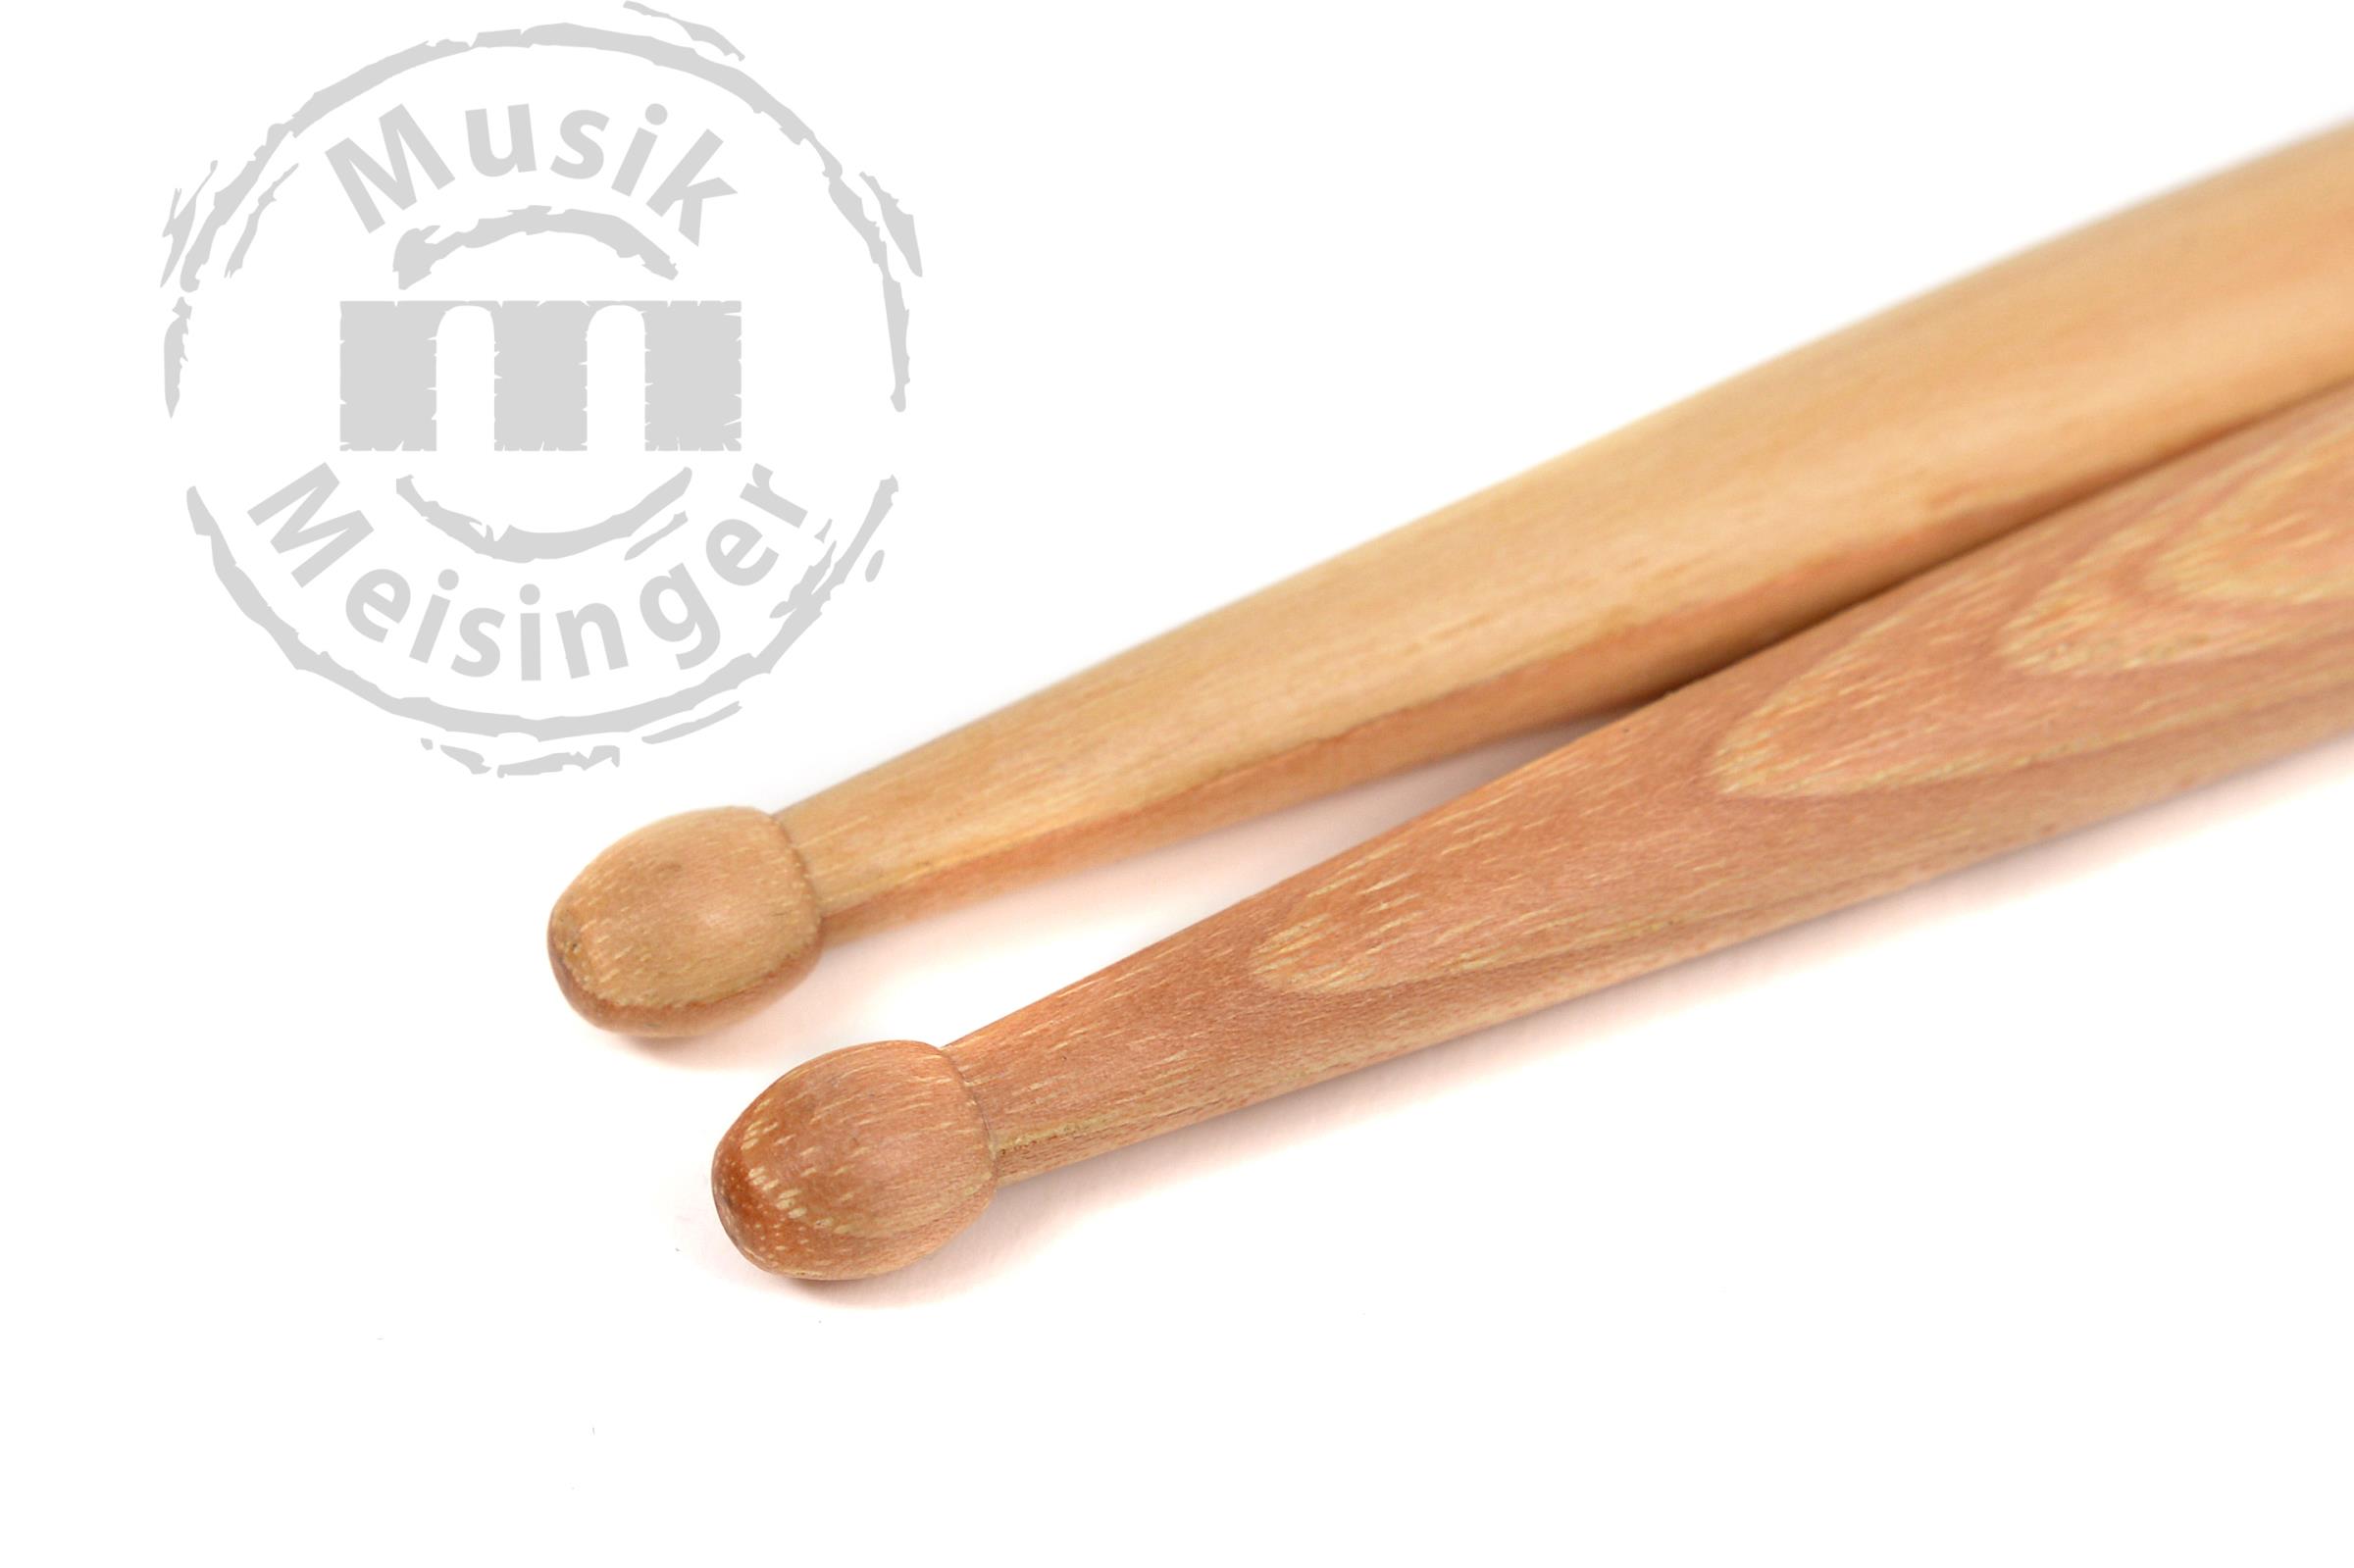 Zildjian Sticks Gauge Serie ZG6 Hickory Wood Tip